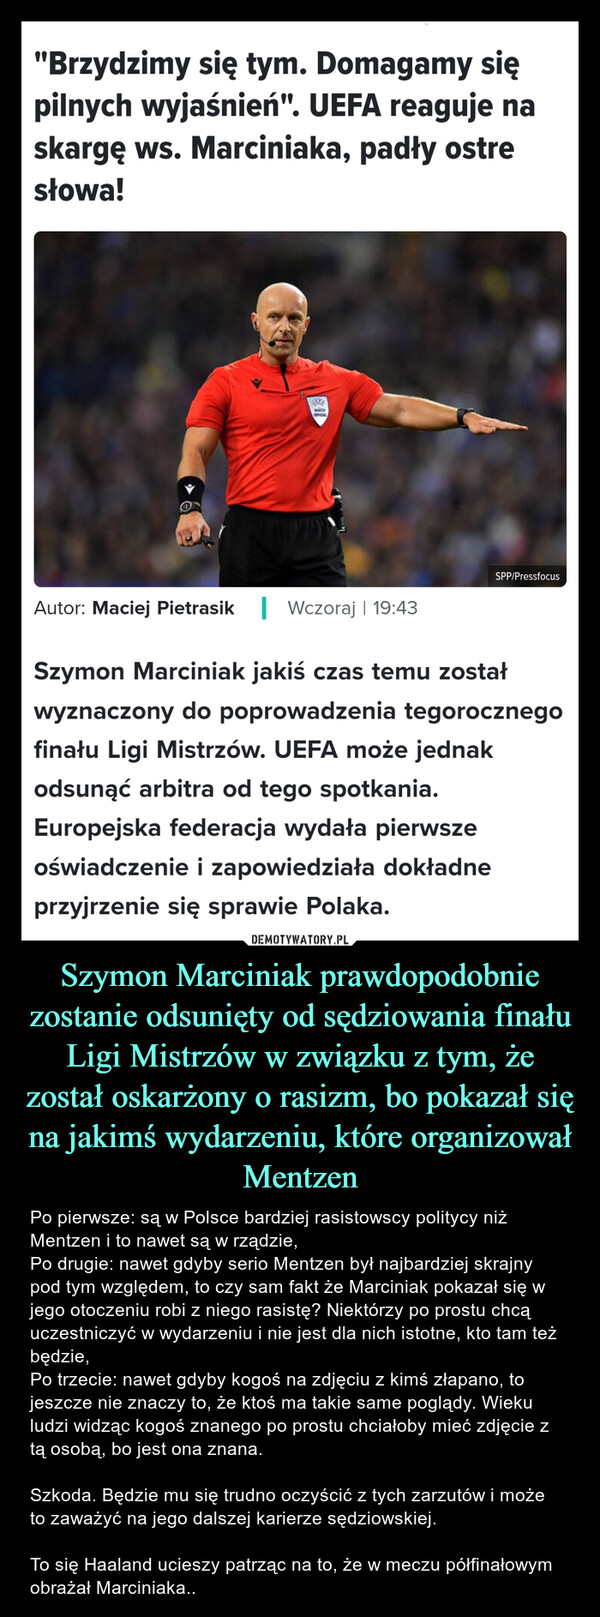 Szymon Marciniak prawdopodobnie zostanie odsunięty od sędziowania finału Ligi Mistrzów w związku z tym, że został oskarżony o rasizm, bo pokazał się na jakimś wydarzeniu, które organizował Mentzen